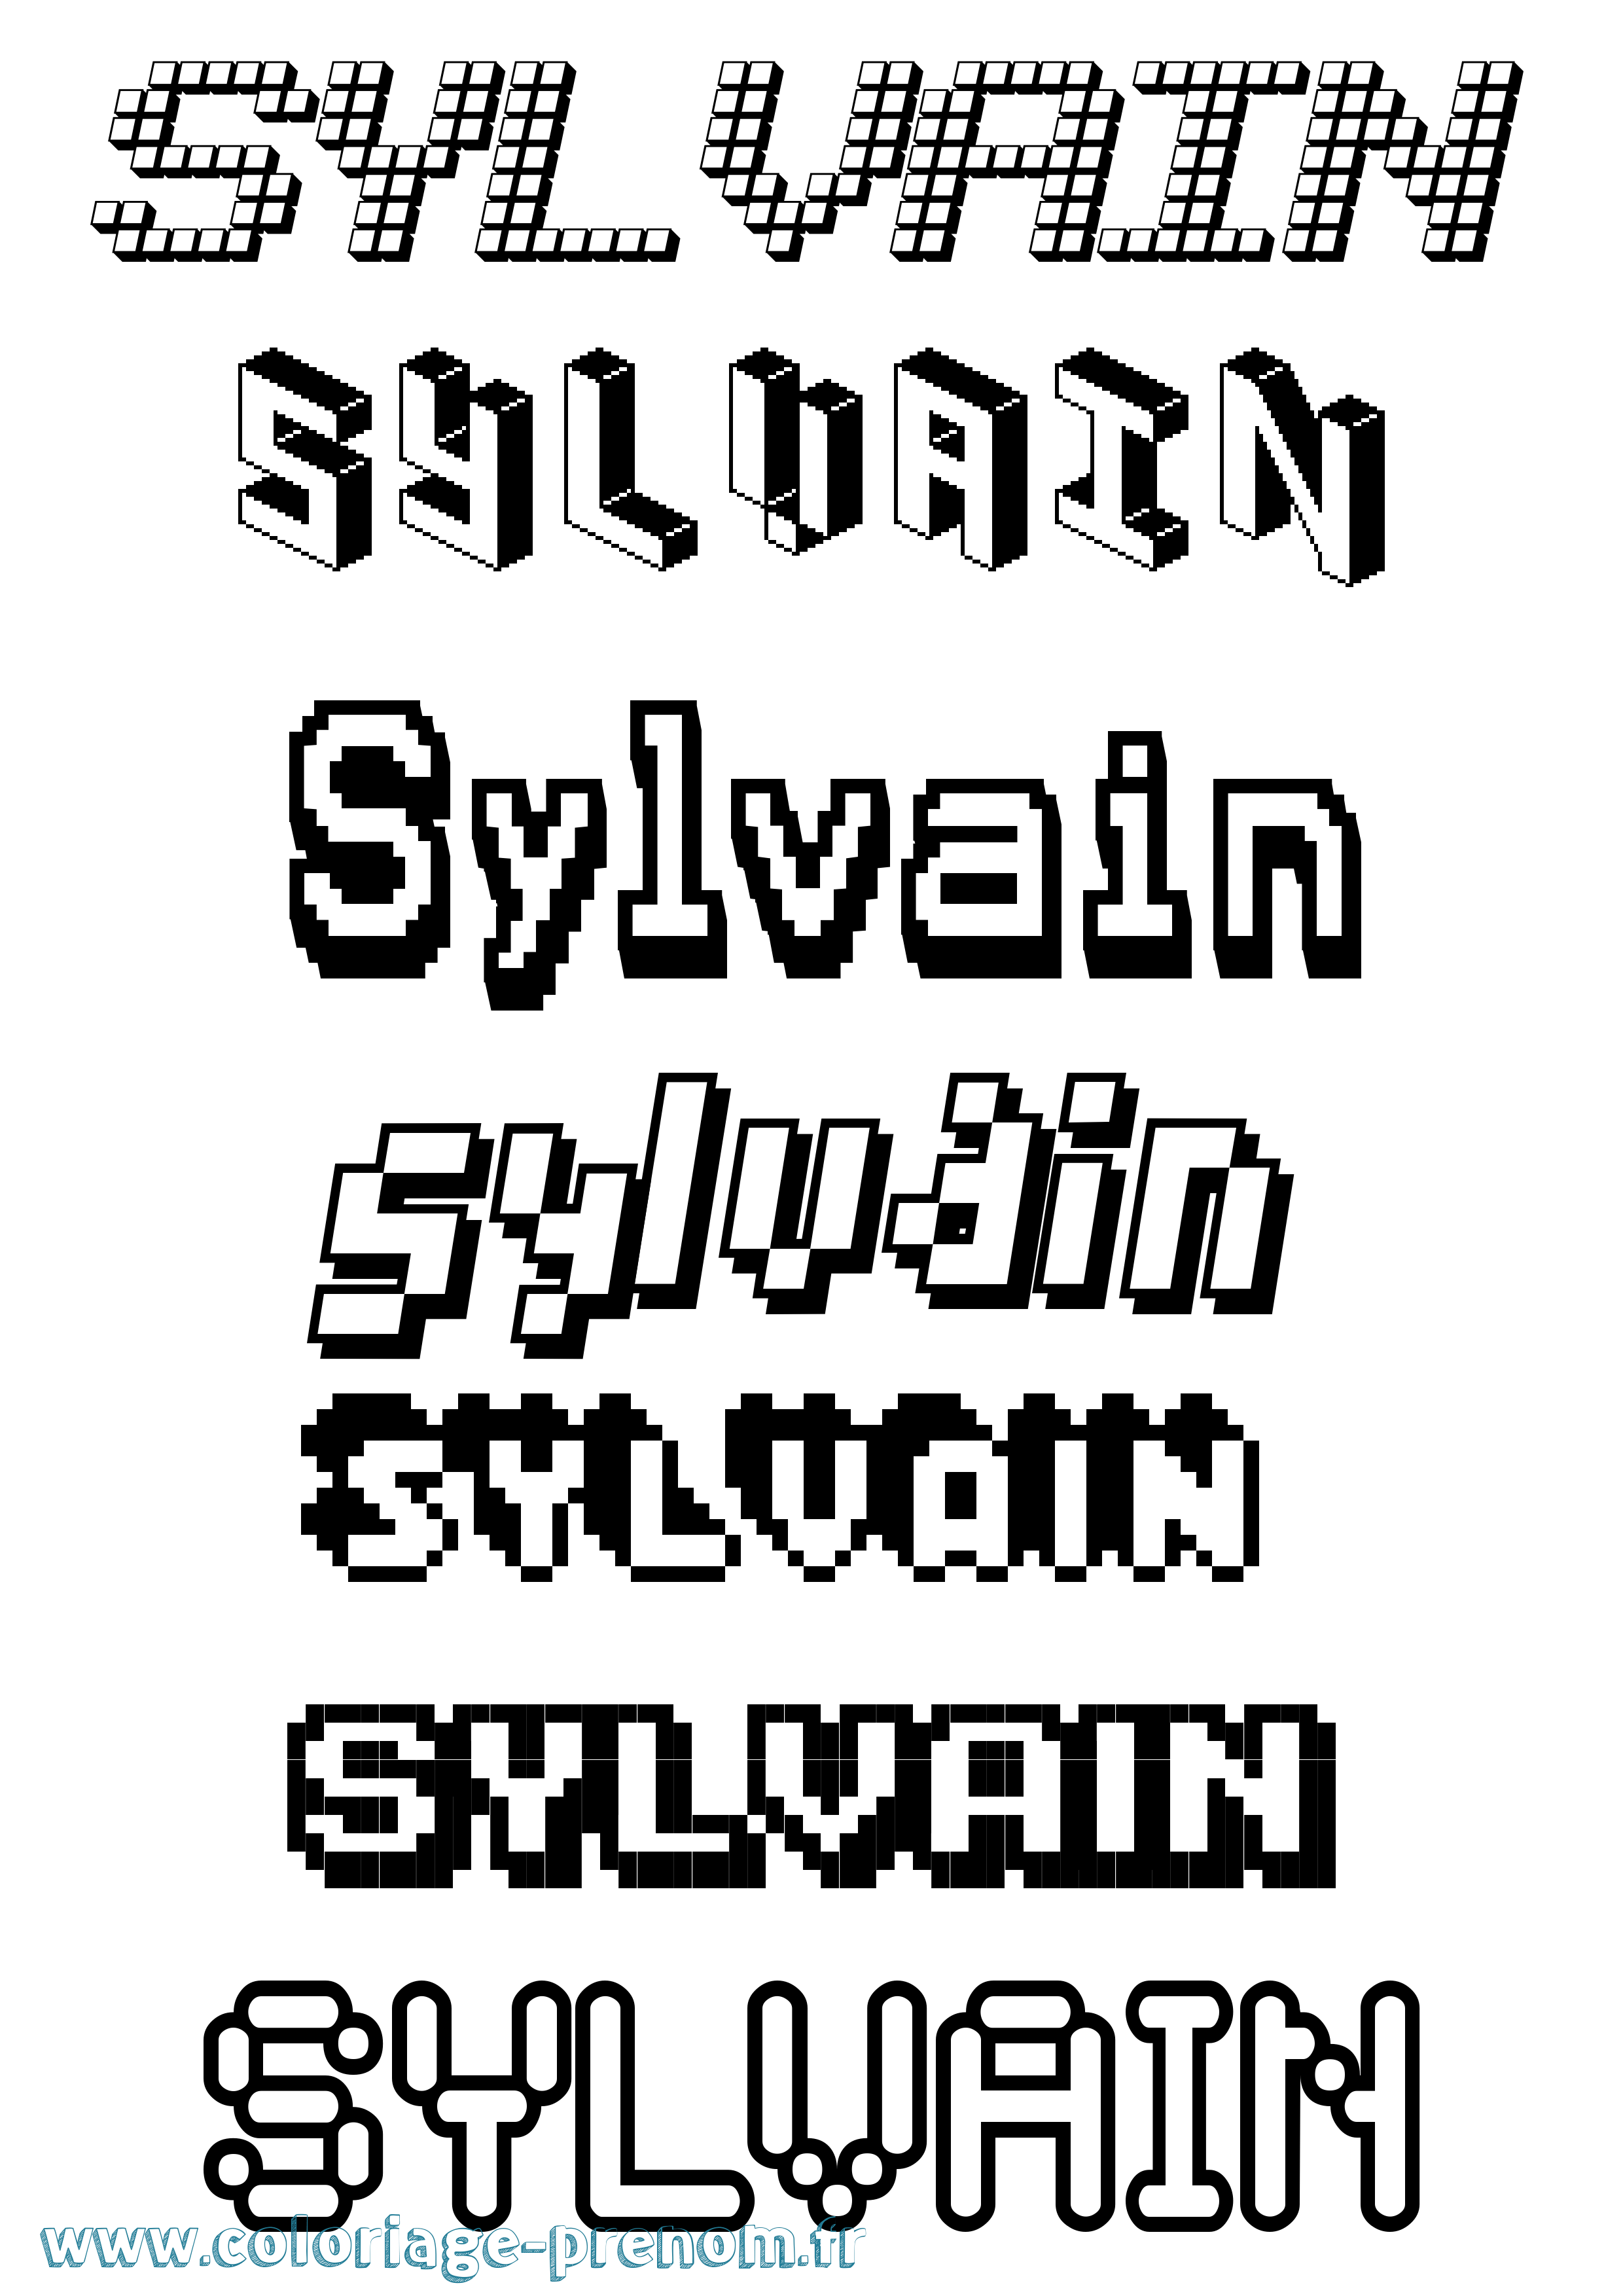 Coloriage prénom Sylvain